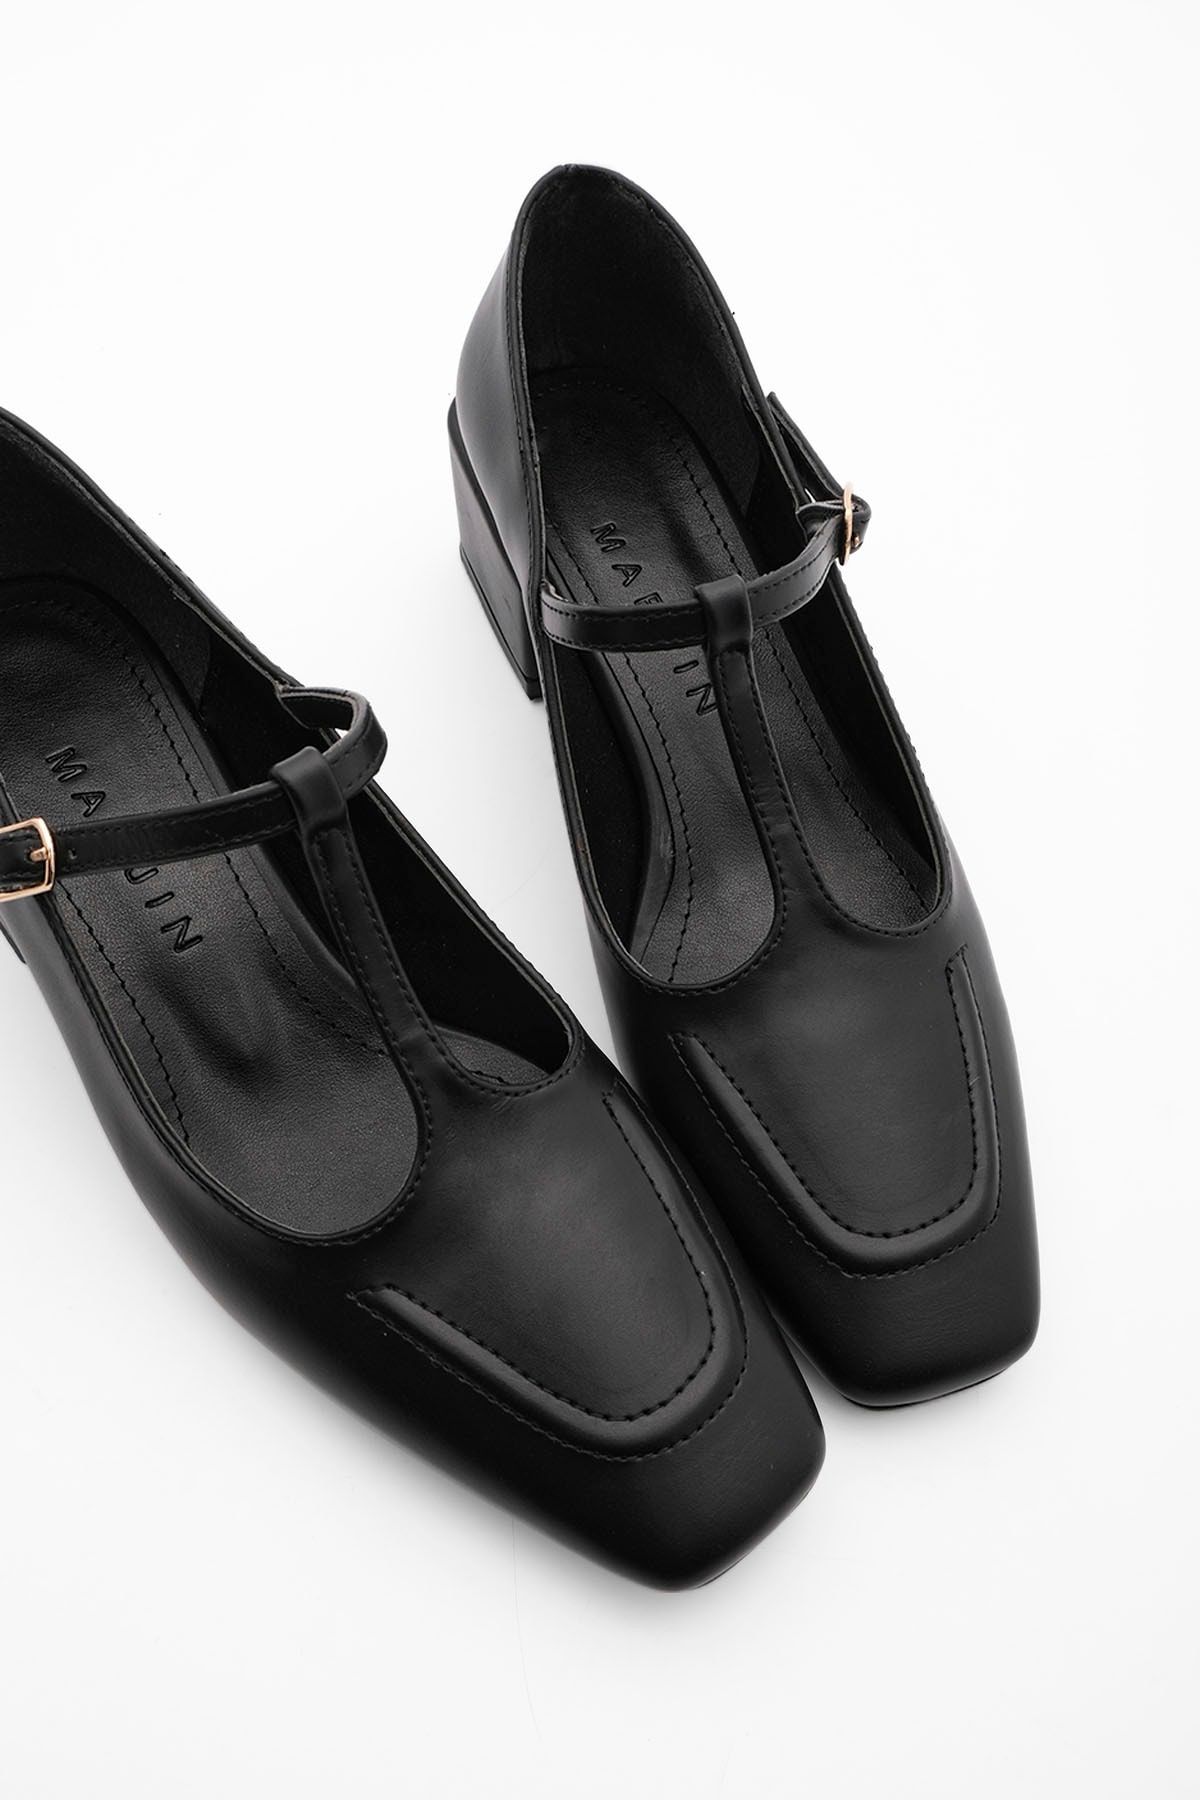 Marjin Kadın Günlük Klasik Topuklu Ayakkabı Panri siyah